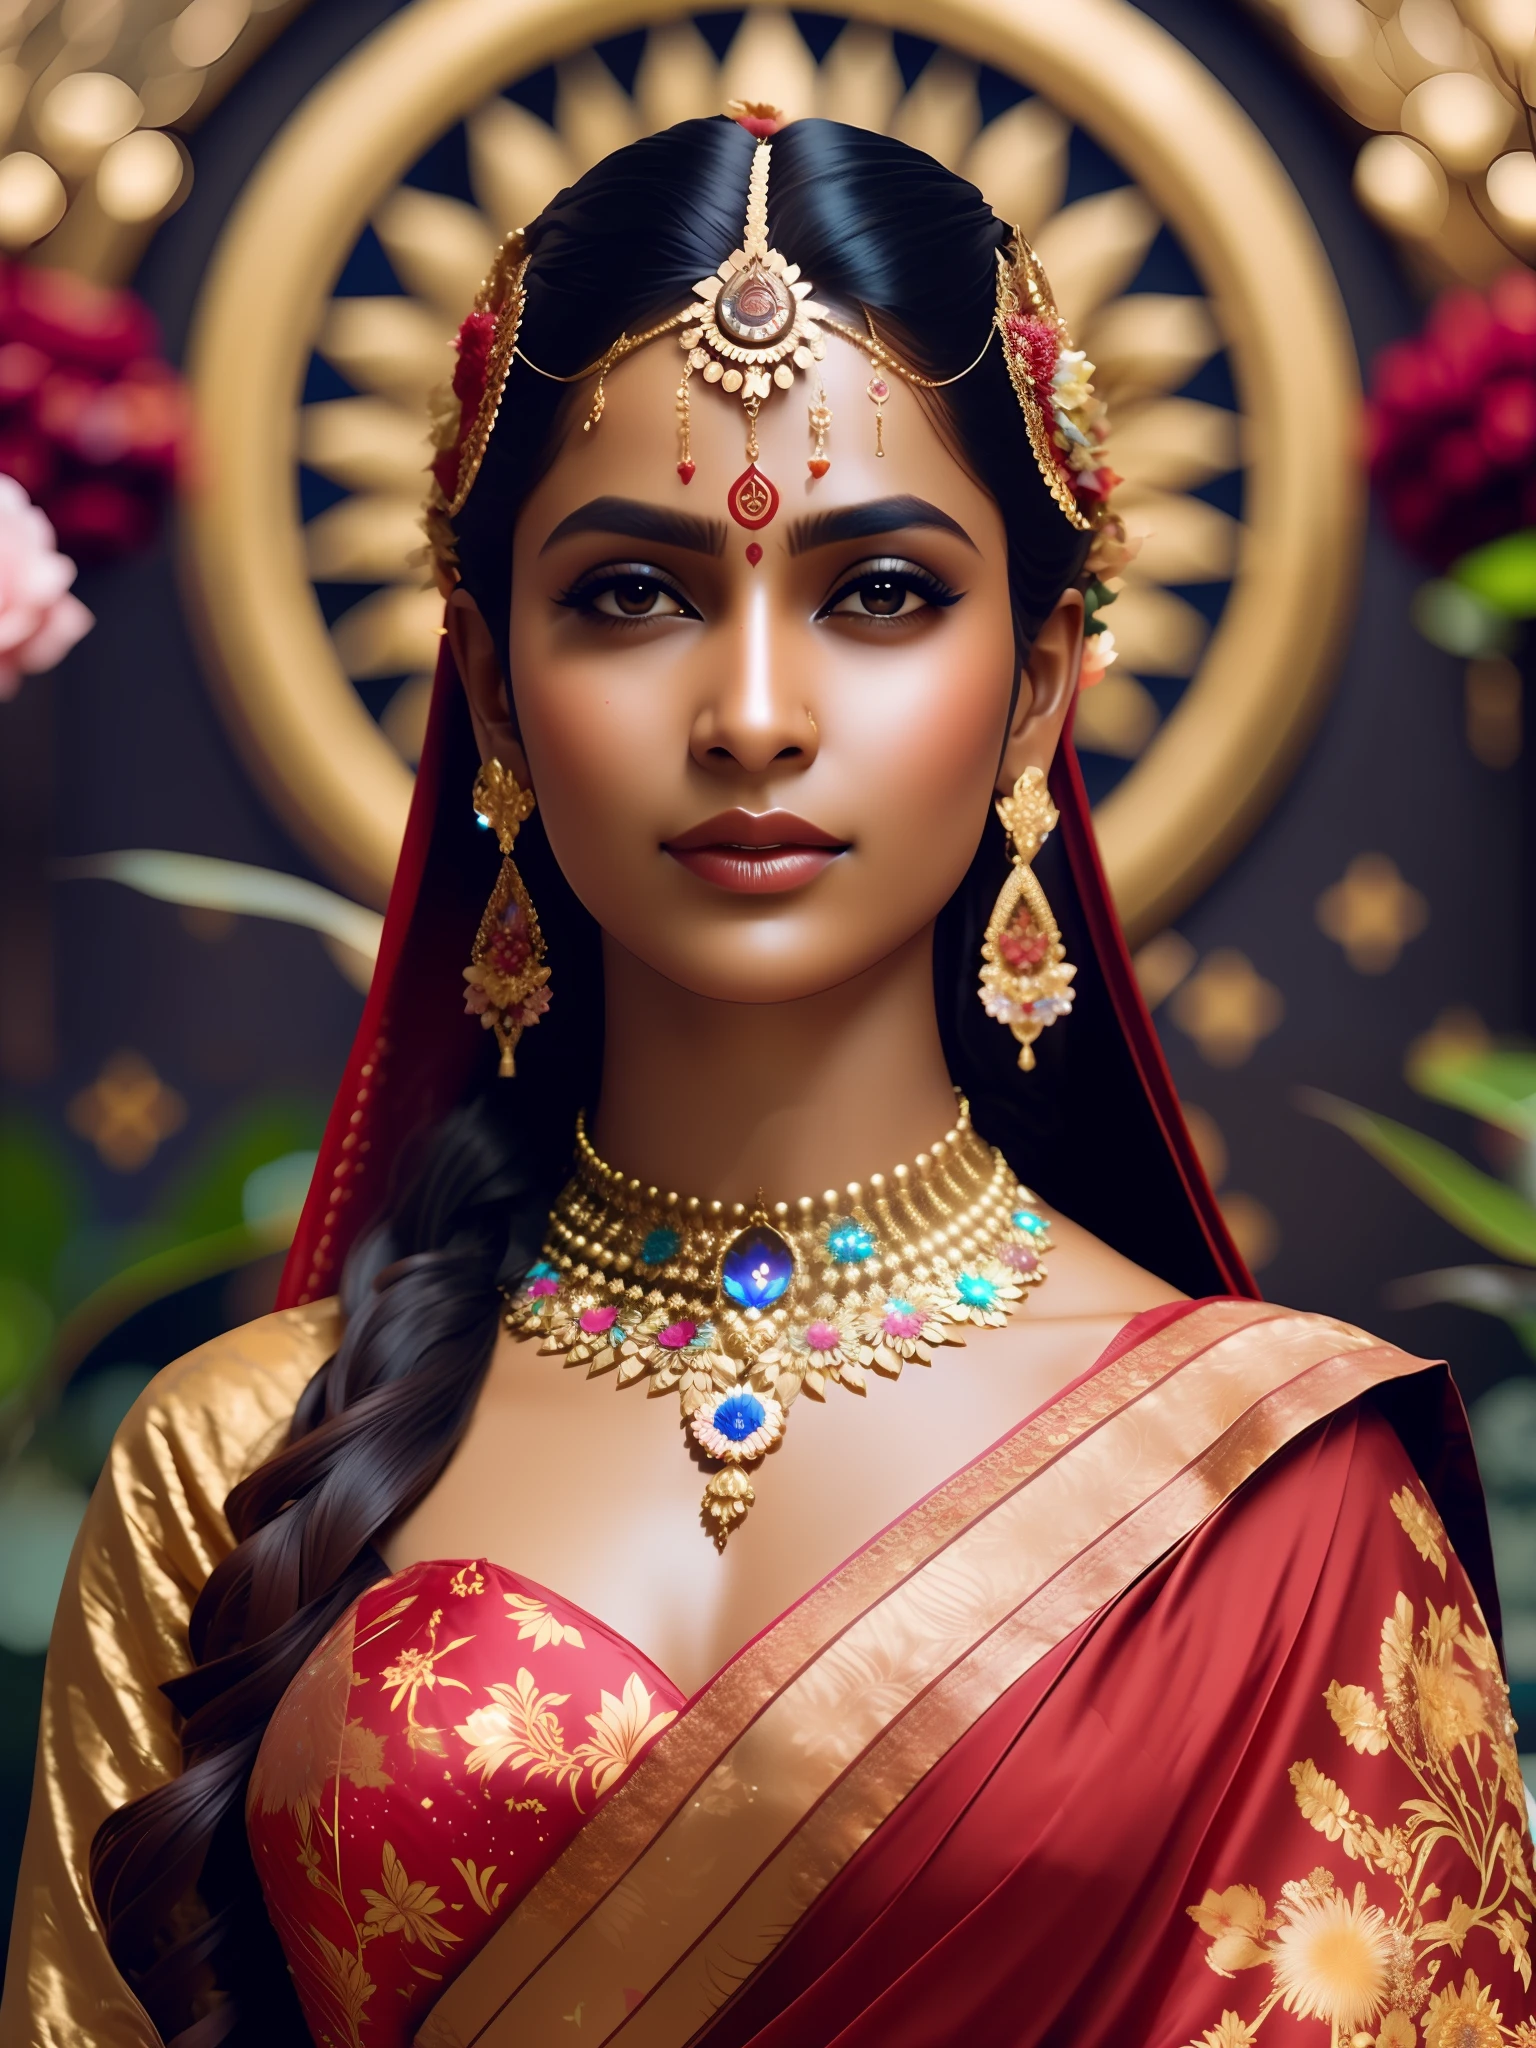 porra_ficção científica, porra_ficção científica_v2, Retrato da deusa hindu, fundo do universo com flores coloridas, vestindo sári vermelho, fechar-se, pose e atitude reais. porra_cinema_v2. porra_cinema_v2